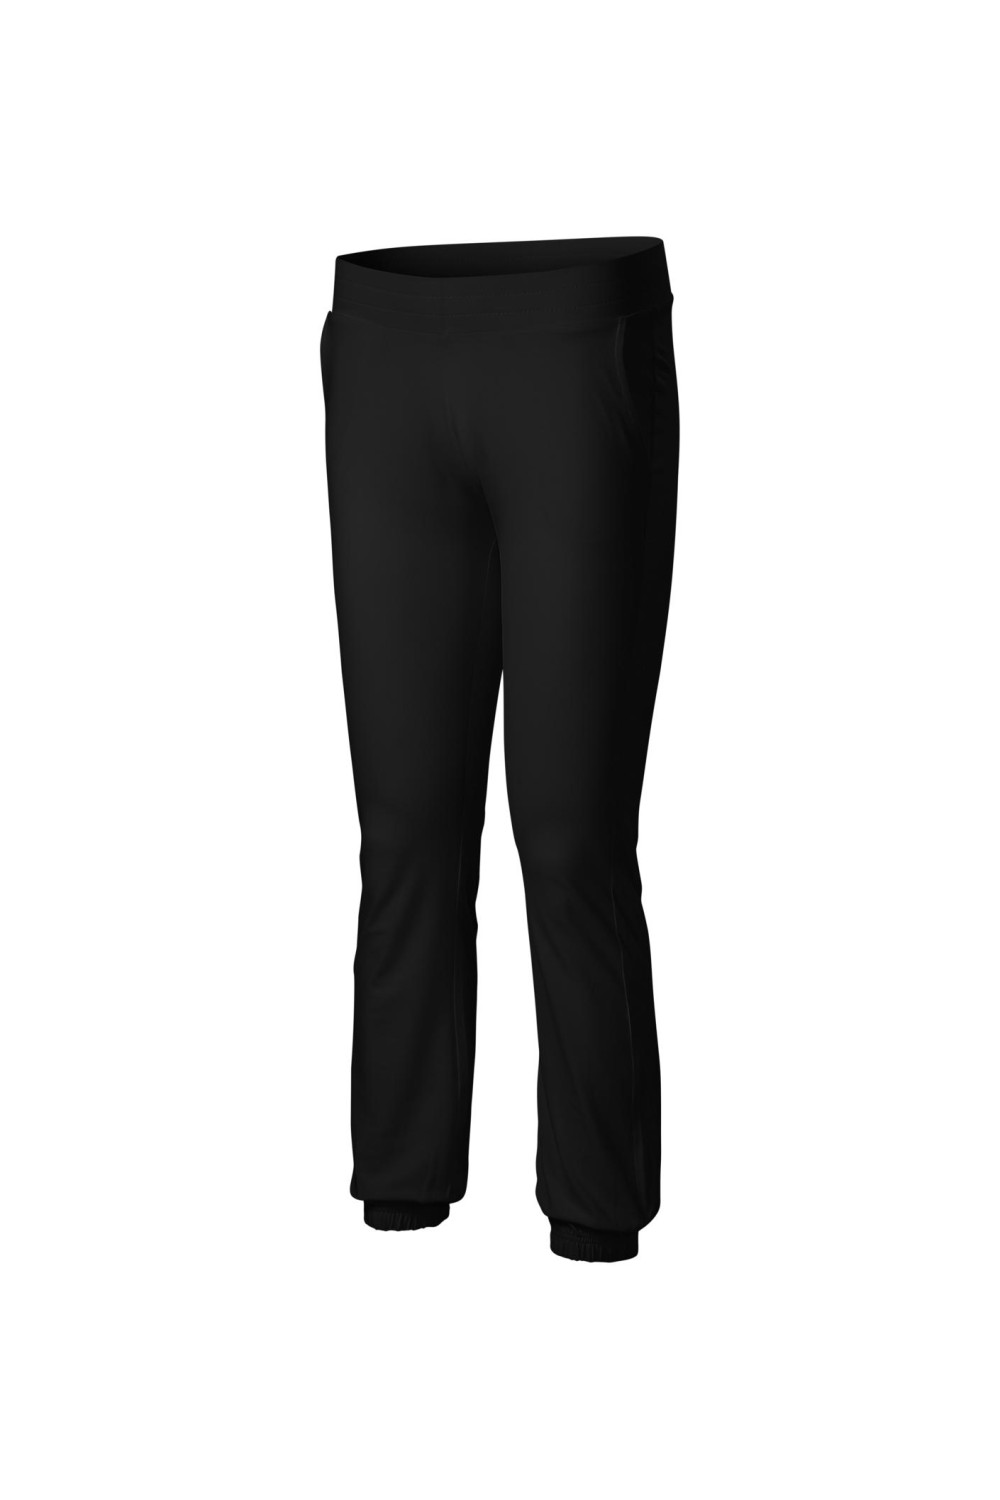 LEISURE 603 MALFINI ADLER Spodnie dresowe damskie czarny